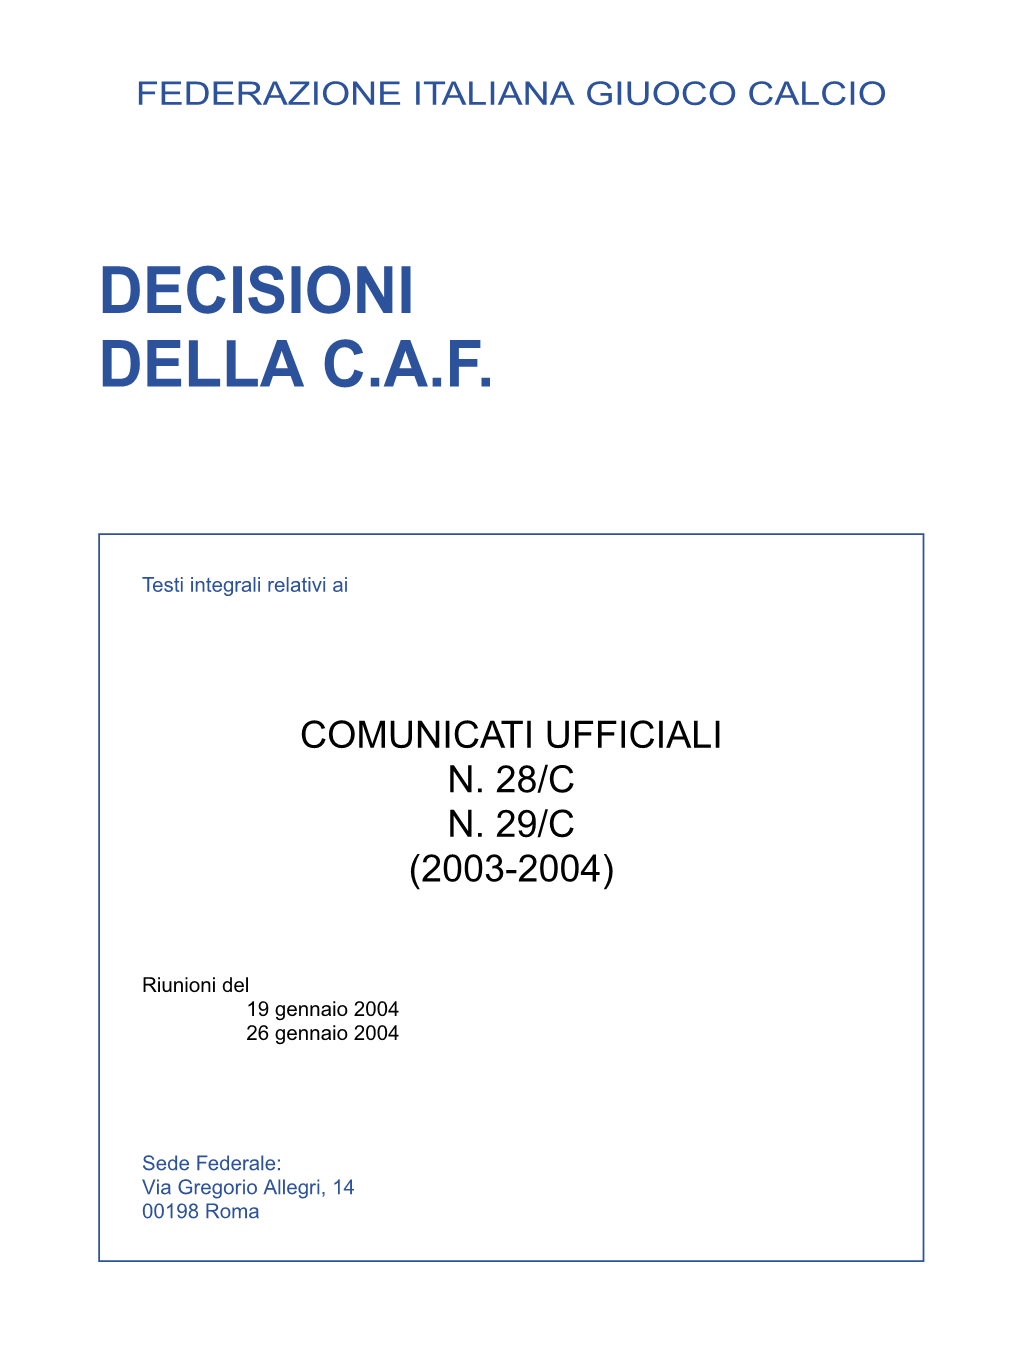 Decisioni Della C.A.F